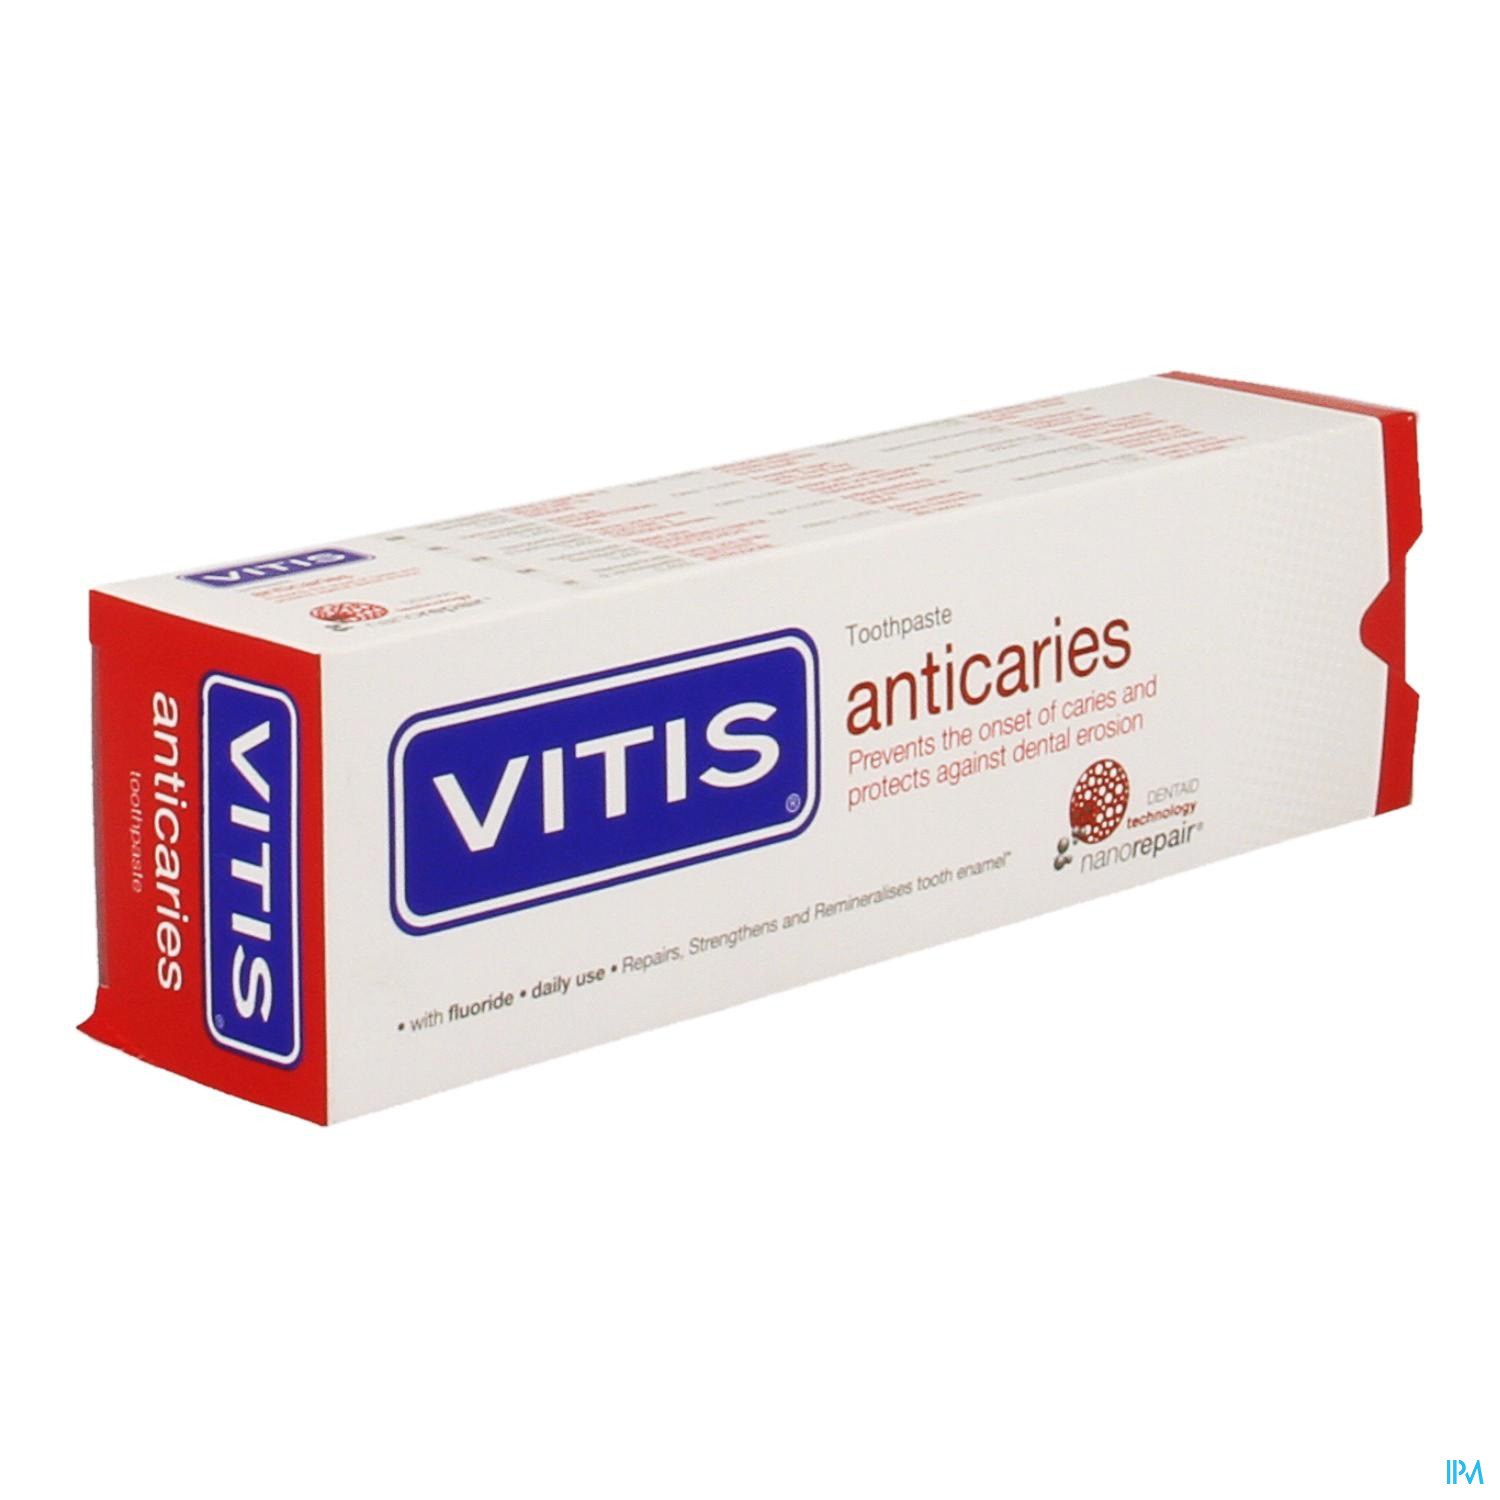 In de genade van voor afbetalen Vitis Anti-caries Tandpasta 31894 - Apotheek Peeters Oudsbergen (Peeters  Pharma BV)